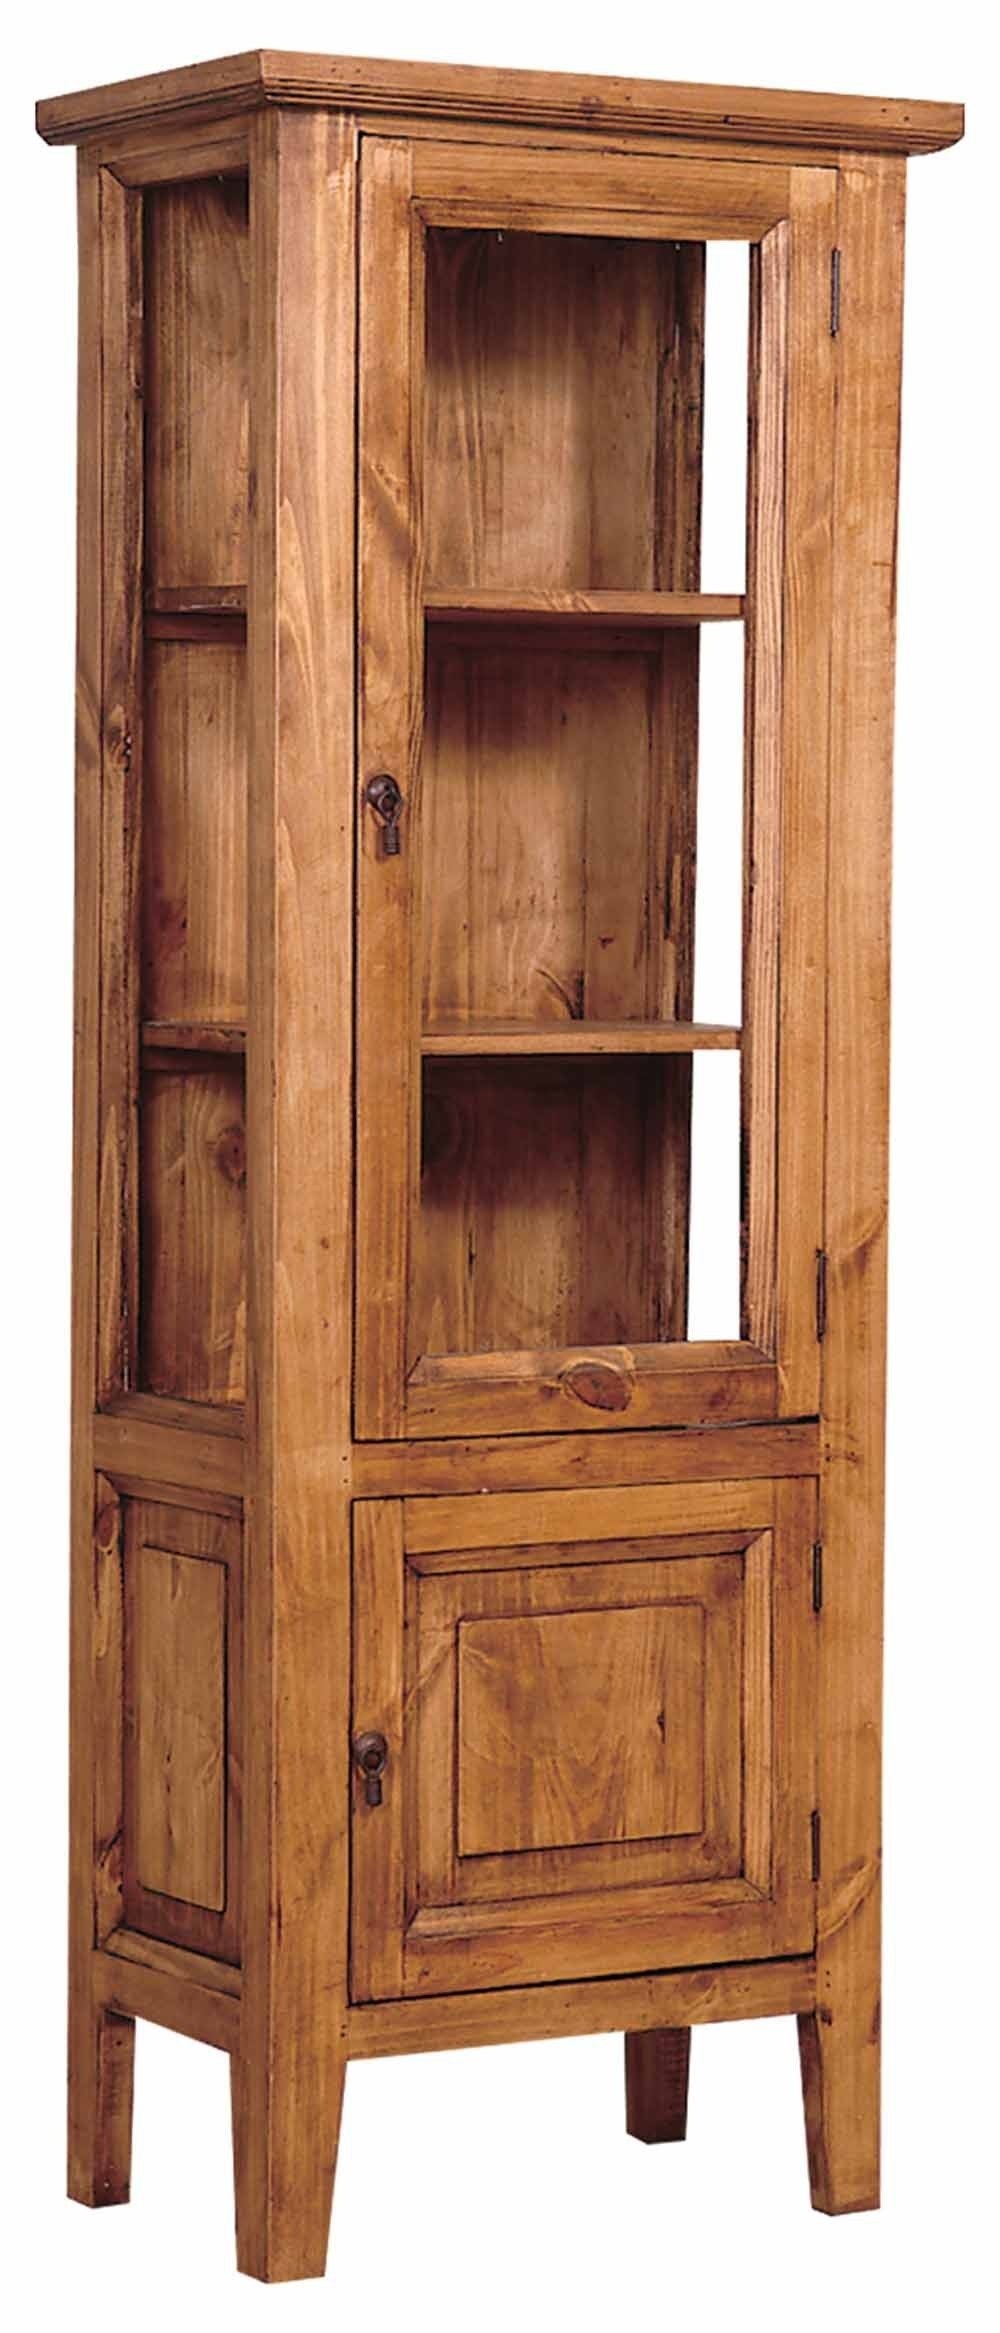 Rustic pine curio cabinet rusticpinefurniture furniture